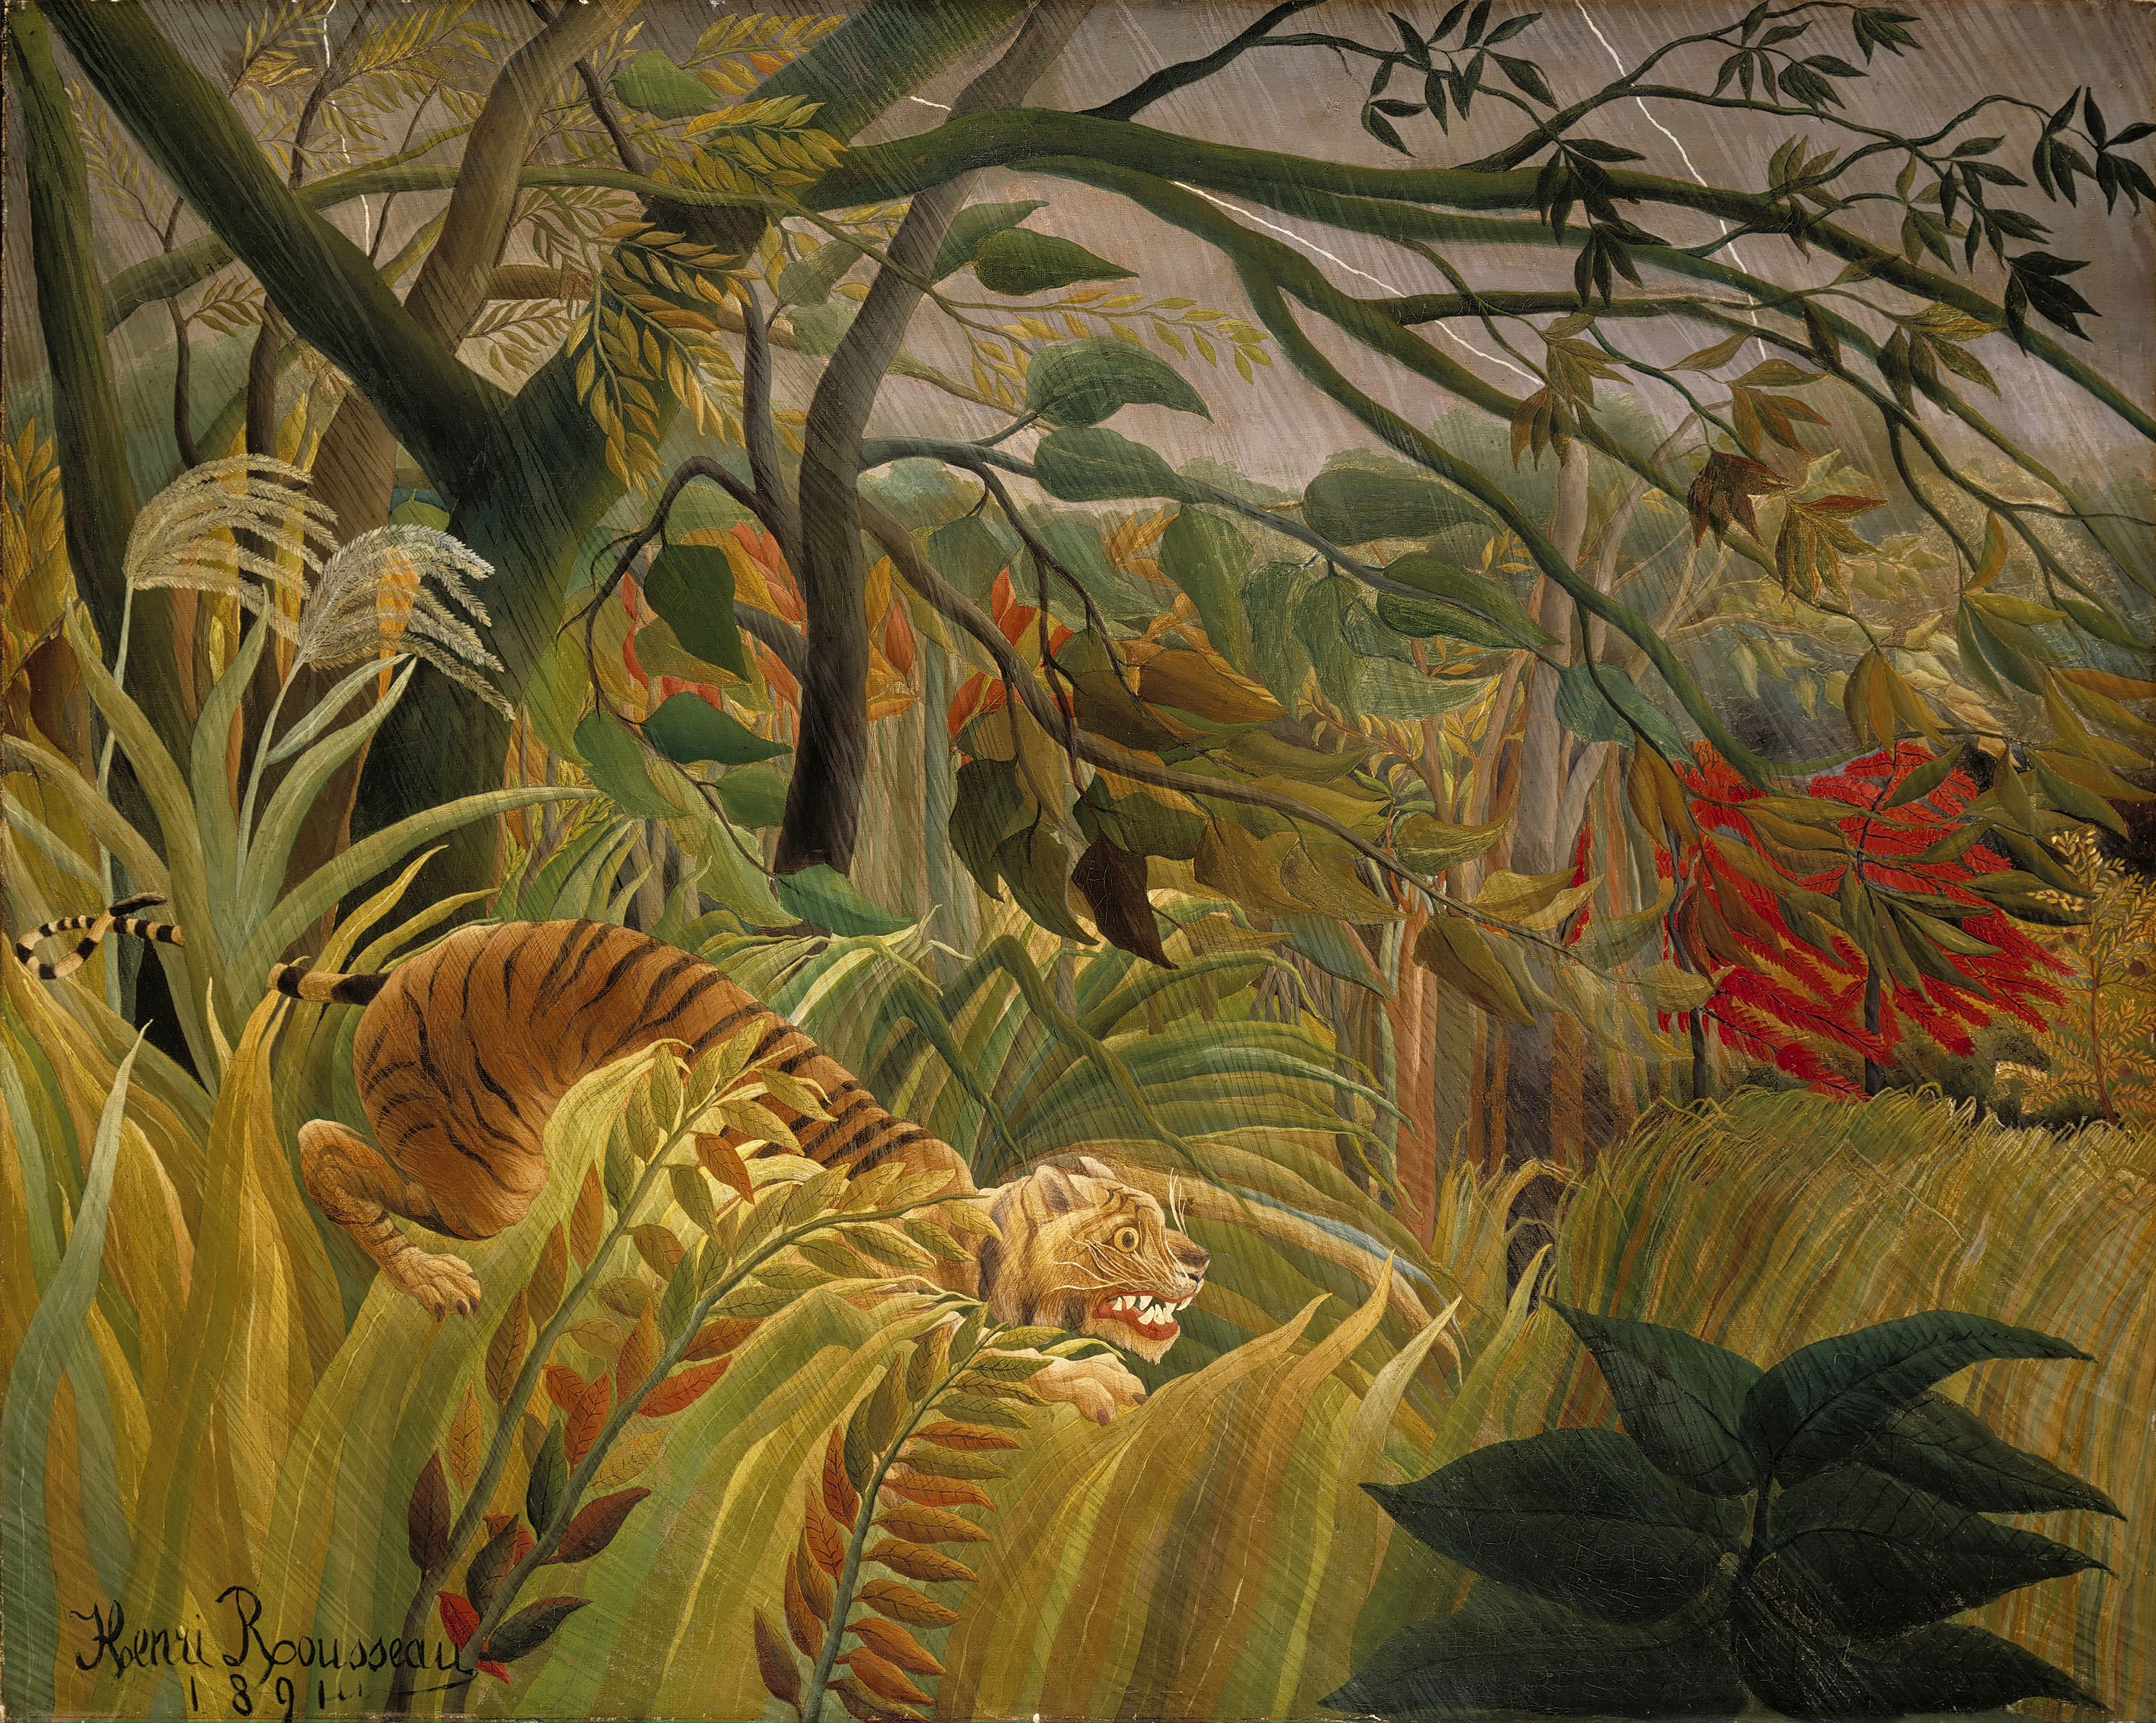 Tigre en una tormenta tropical (¡sorprendido!) by Henri Rousseau - 1891 - 129,8 x 161,9 cm Galería Nacional